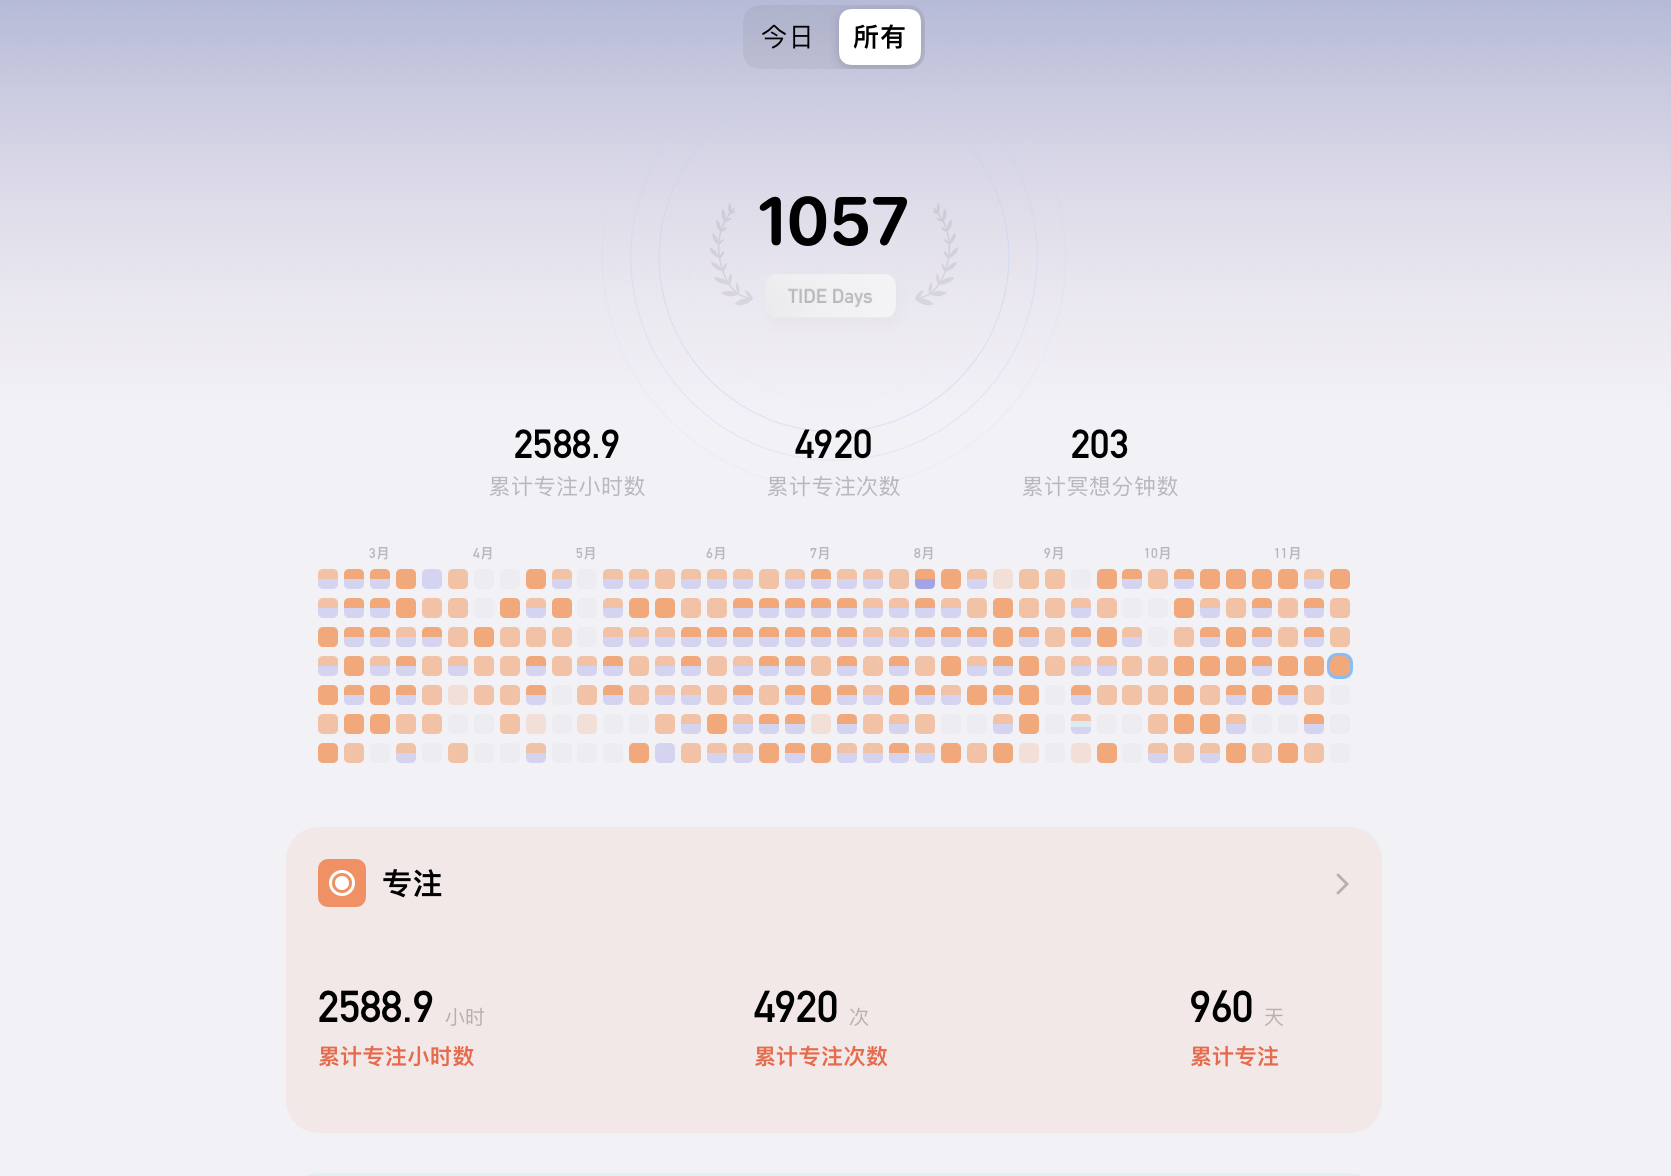 我日常会借助潮汐 app 来专注、做时间管理，目前累计专注有 2500+ 小时了